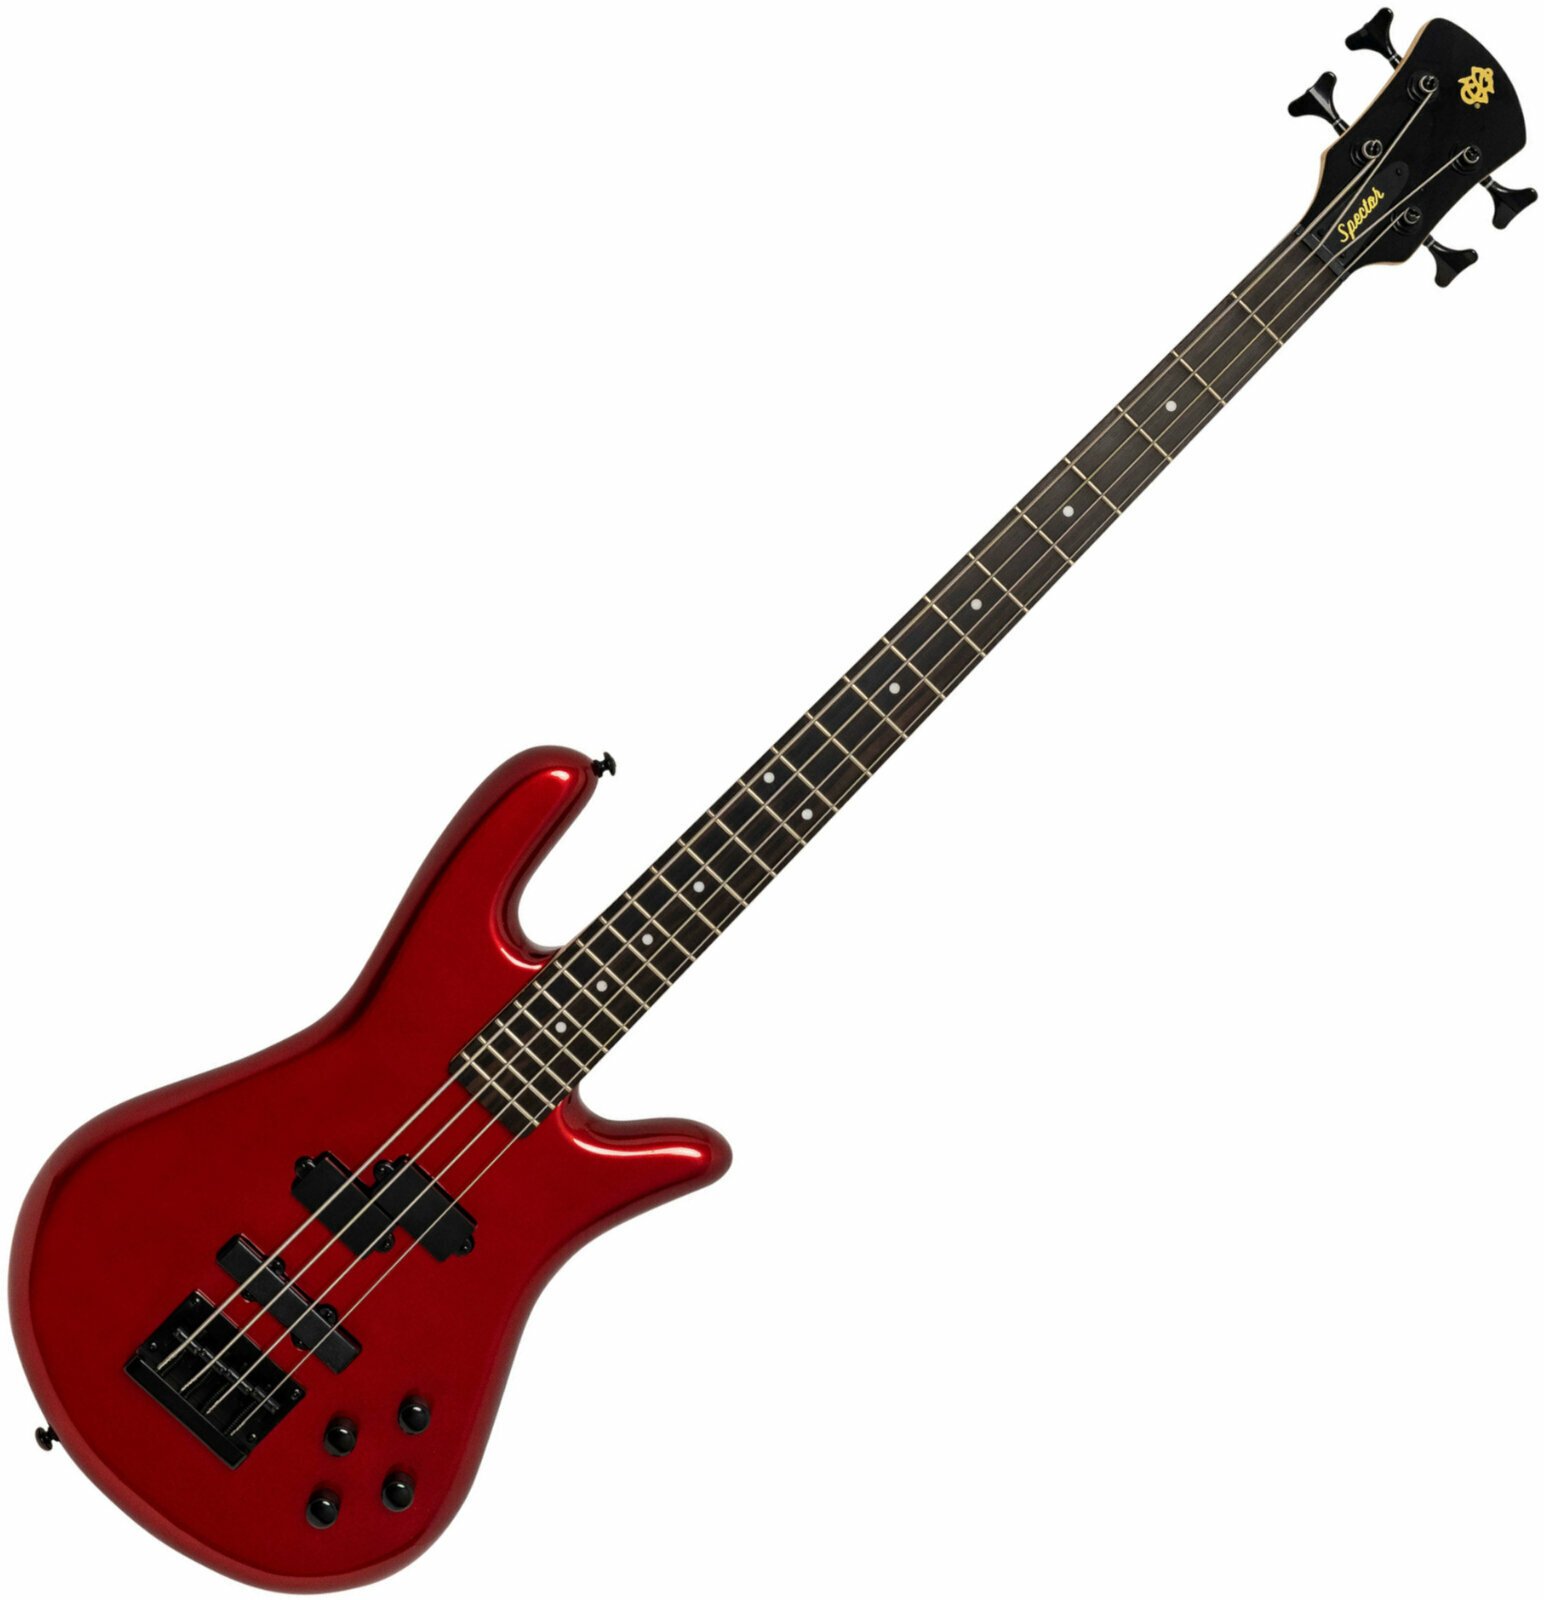 E-Bass Spector Performer 4 Metallic Red Gloss